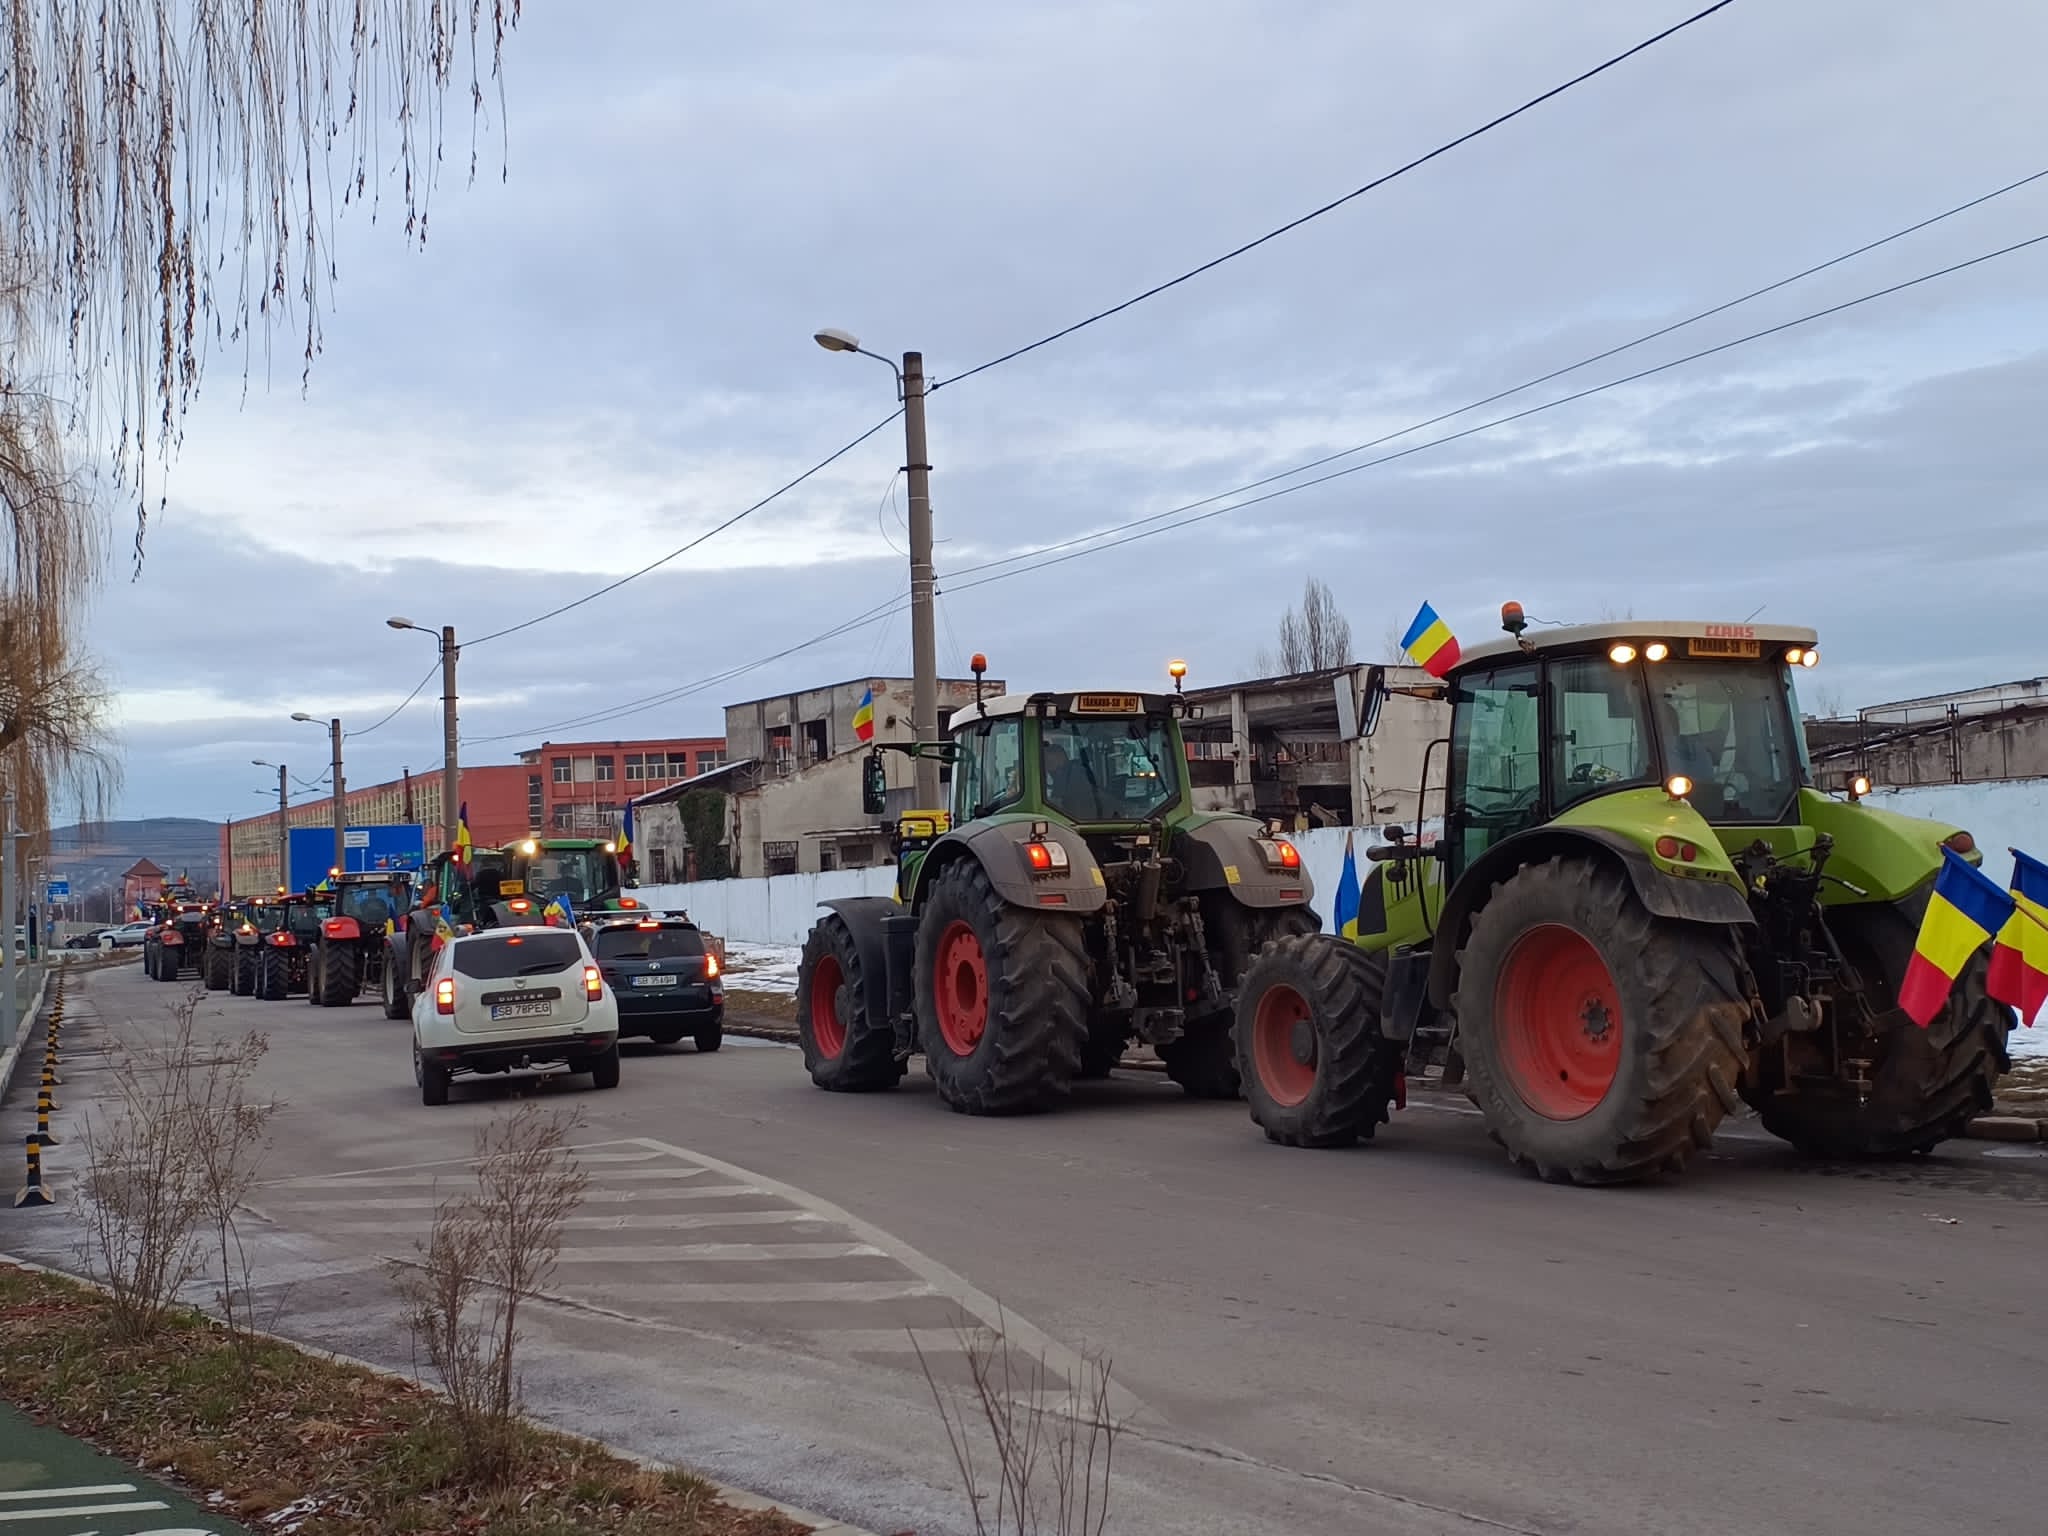 Foto. Sibiul sub invazia tractoarelor! Sute de utilaje agricole și camioane defilează pe străzile orasului